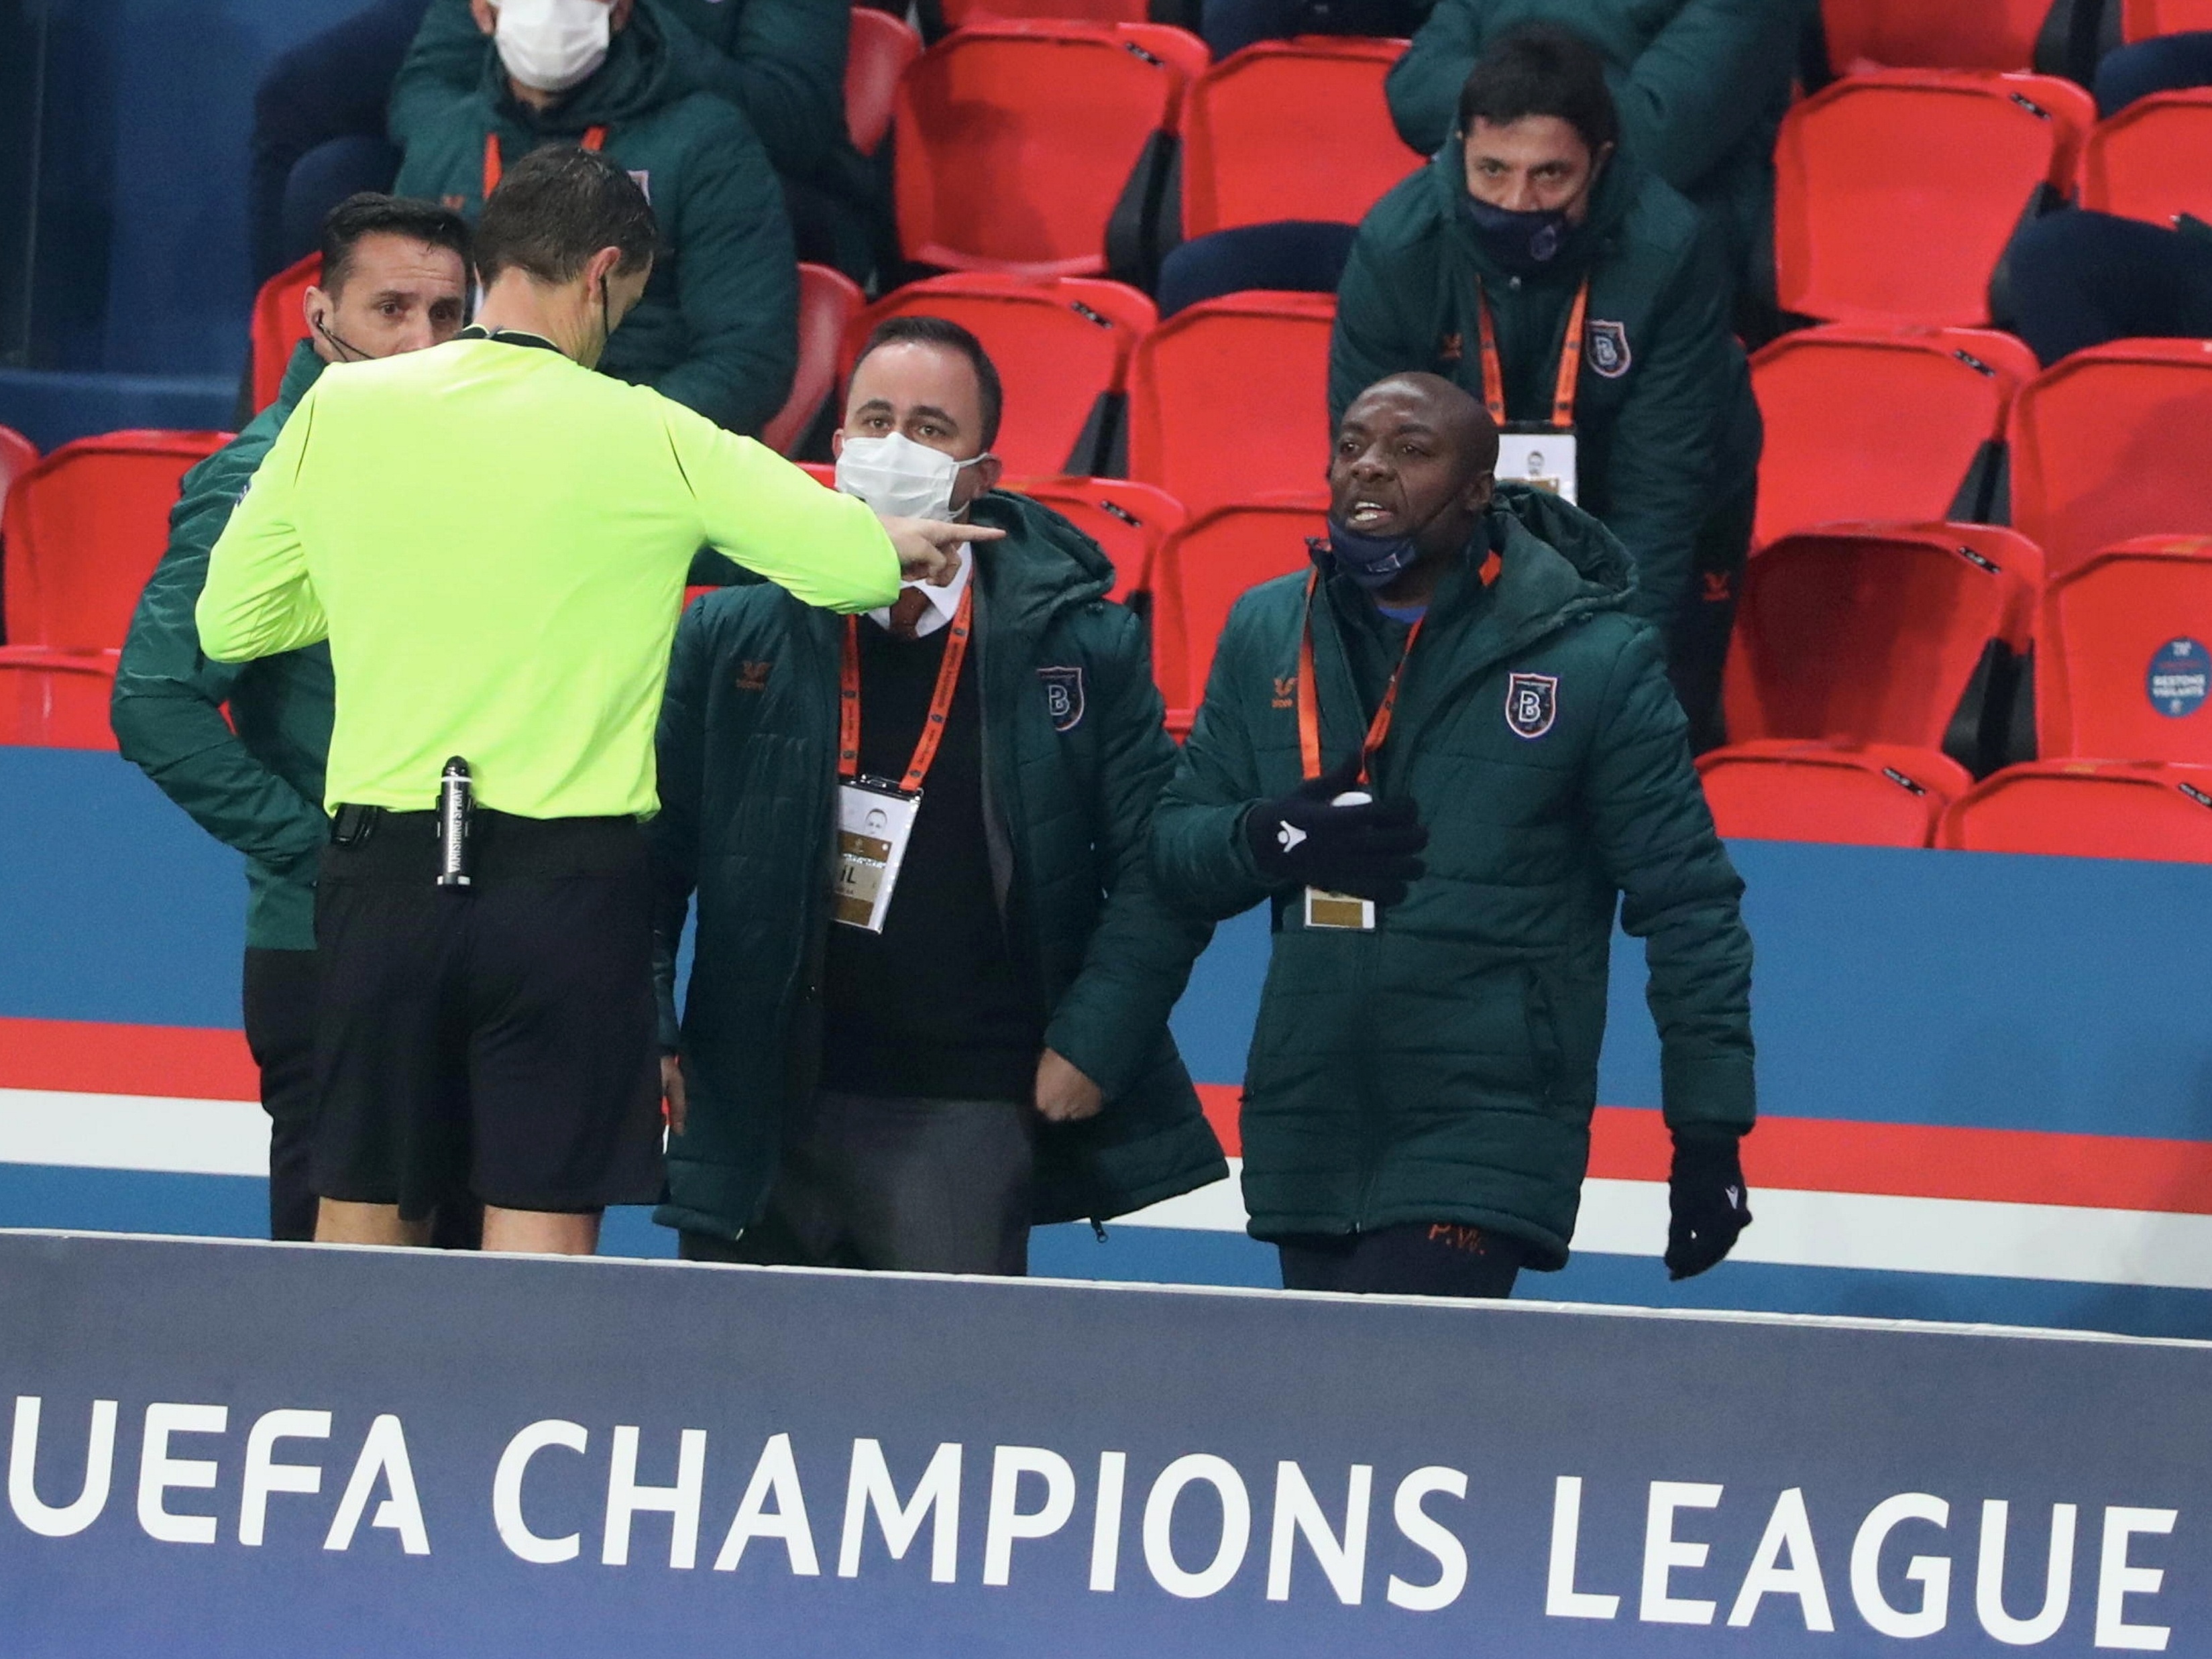 Champions League: Uefa muda escala de árbitros após erro em